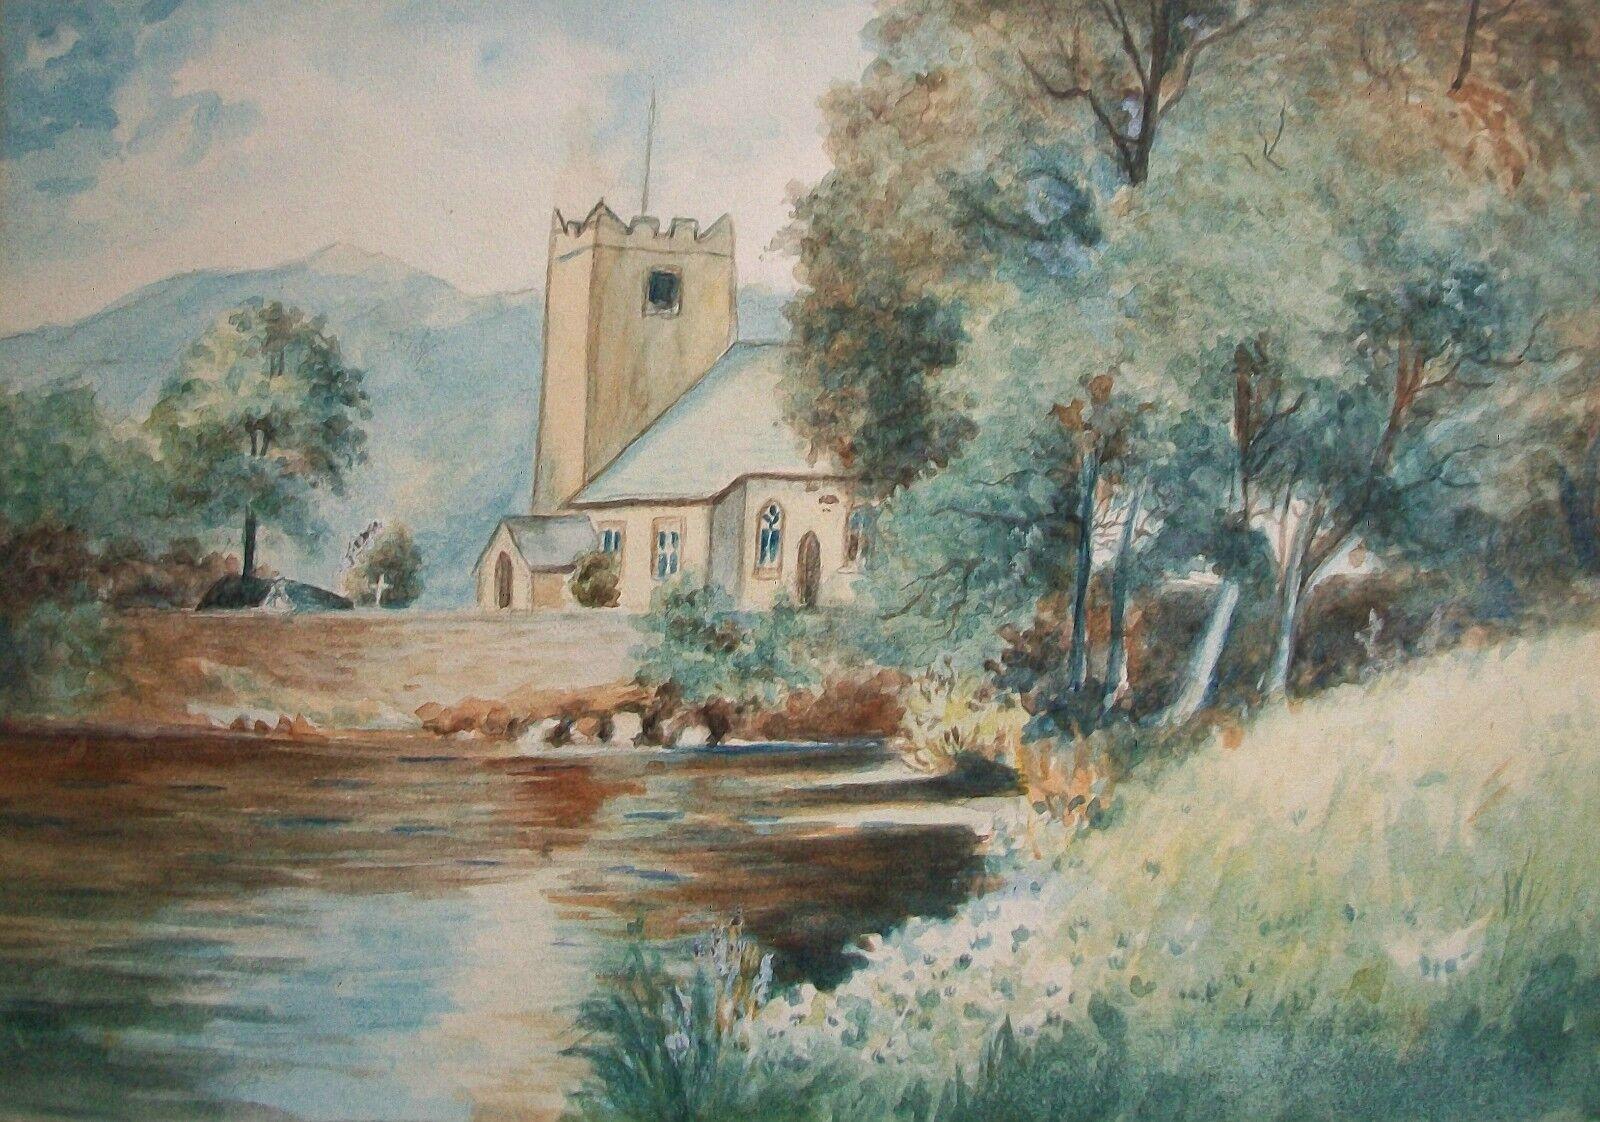 Peinture de paysage à l'aquarelle sur papier de l'école britannique victorienne - représentant une église de campagne au bord d'un lac - verre et cadre d'origine avec finition dorée - non signée - Royaume-Uni - fin du 19e siècle. 

Excellent état